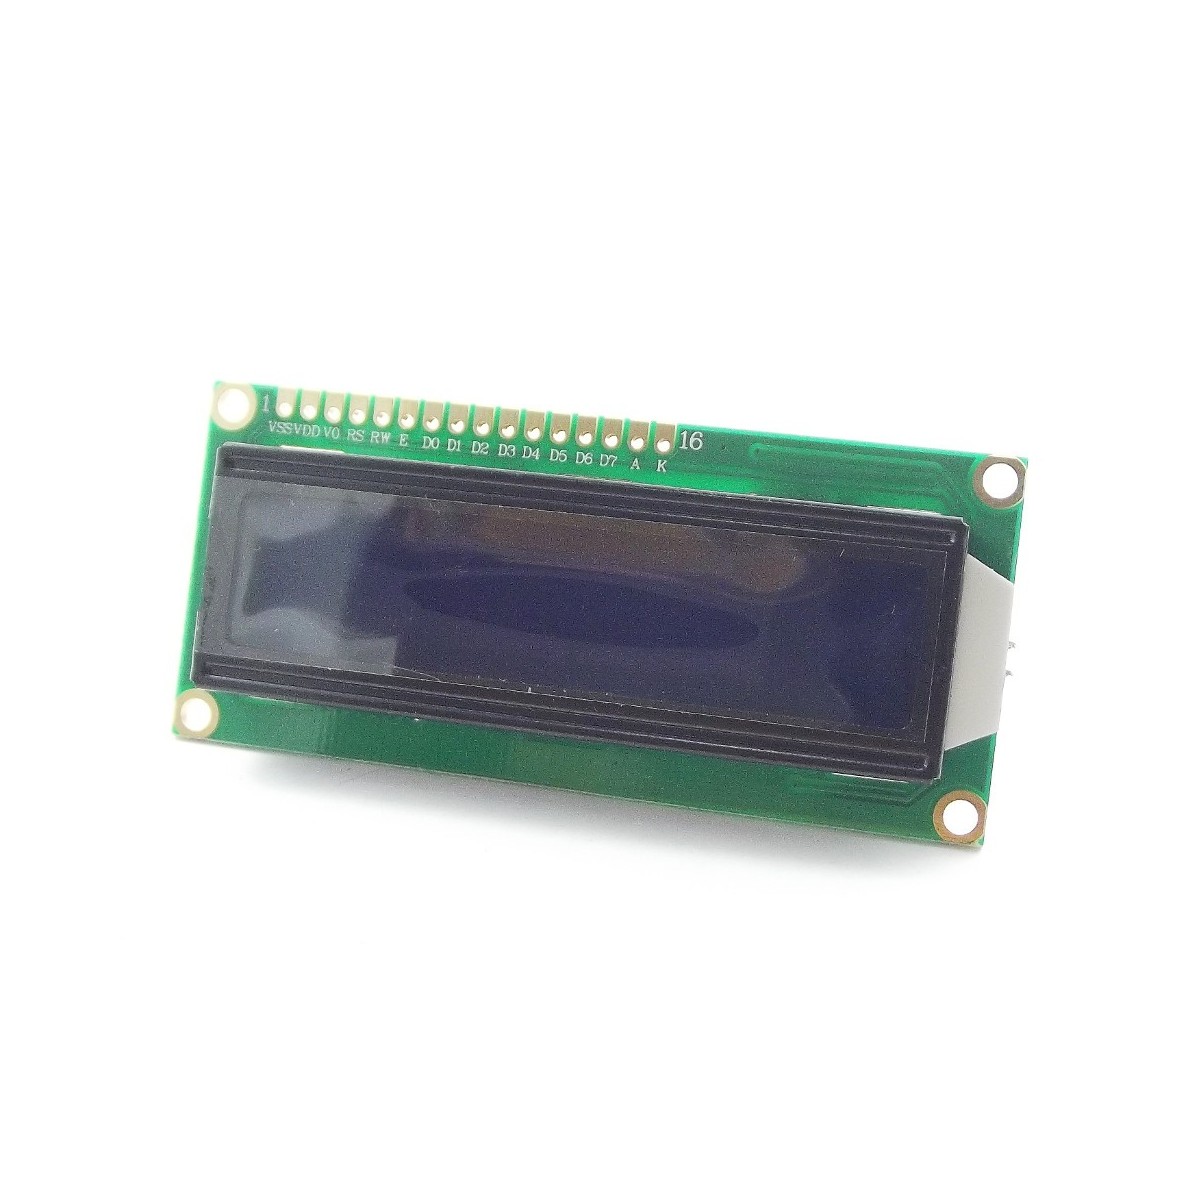 materno Ciencias Dispensación Display Alfanumérico LCD 1602